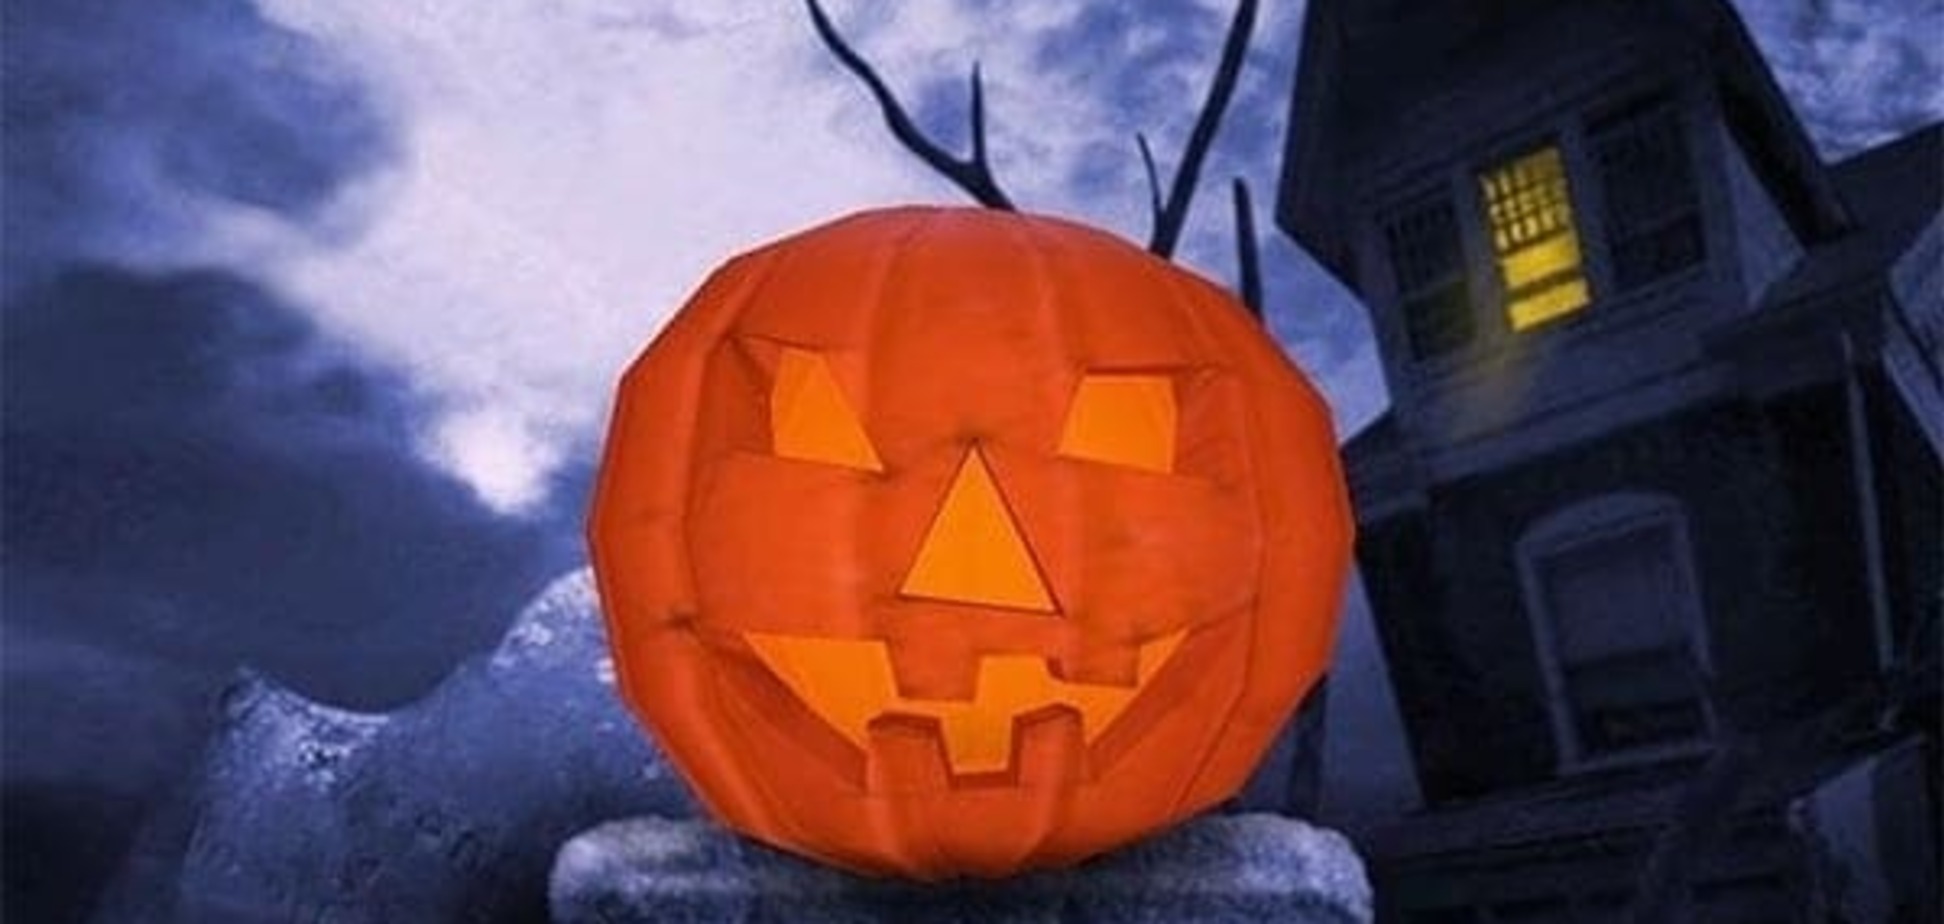 Приглашаем на праздник 'Наш веселый Halloween' (г.Винница, 30 октября 2011 г.)!